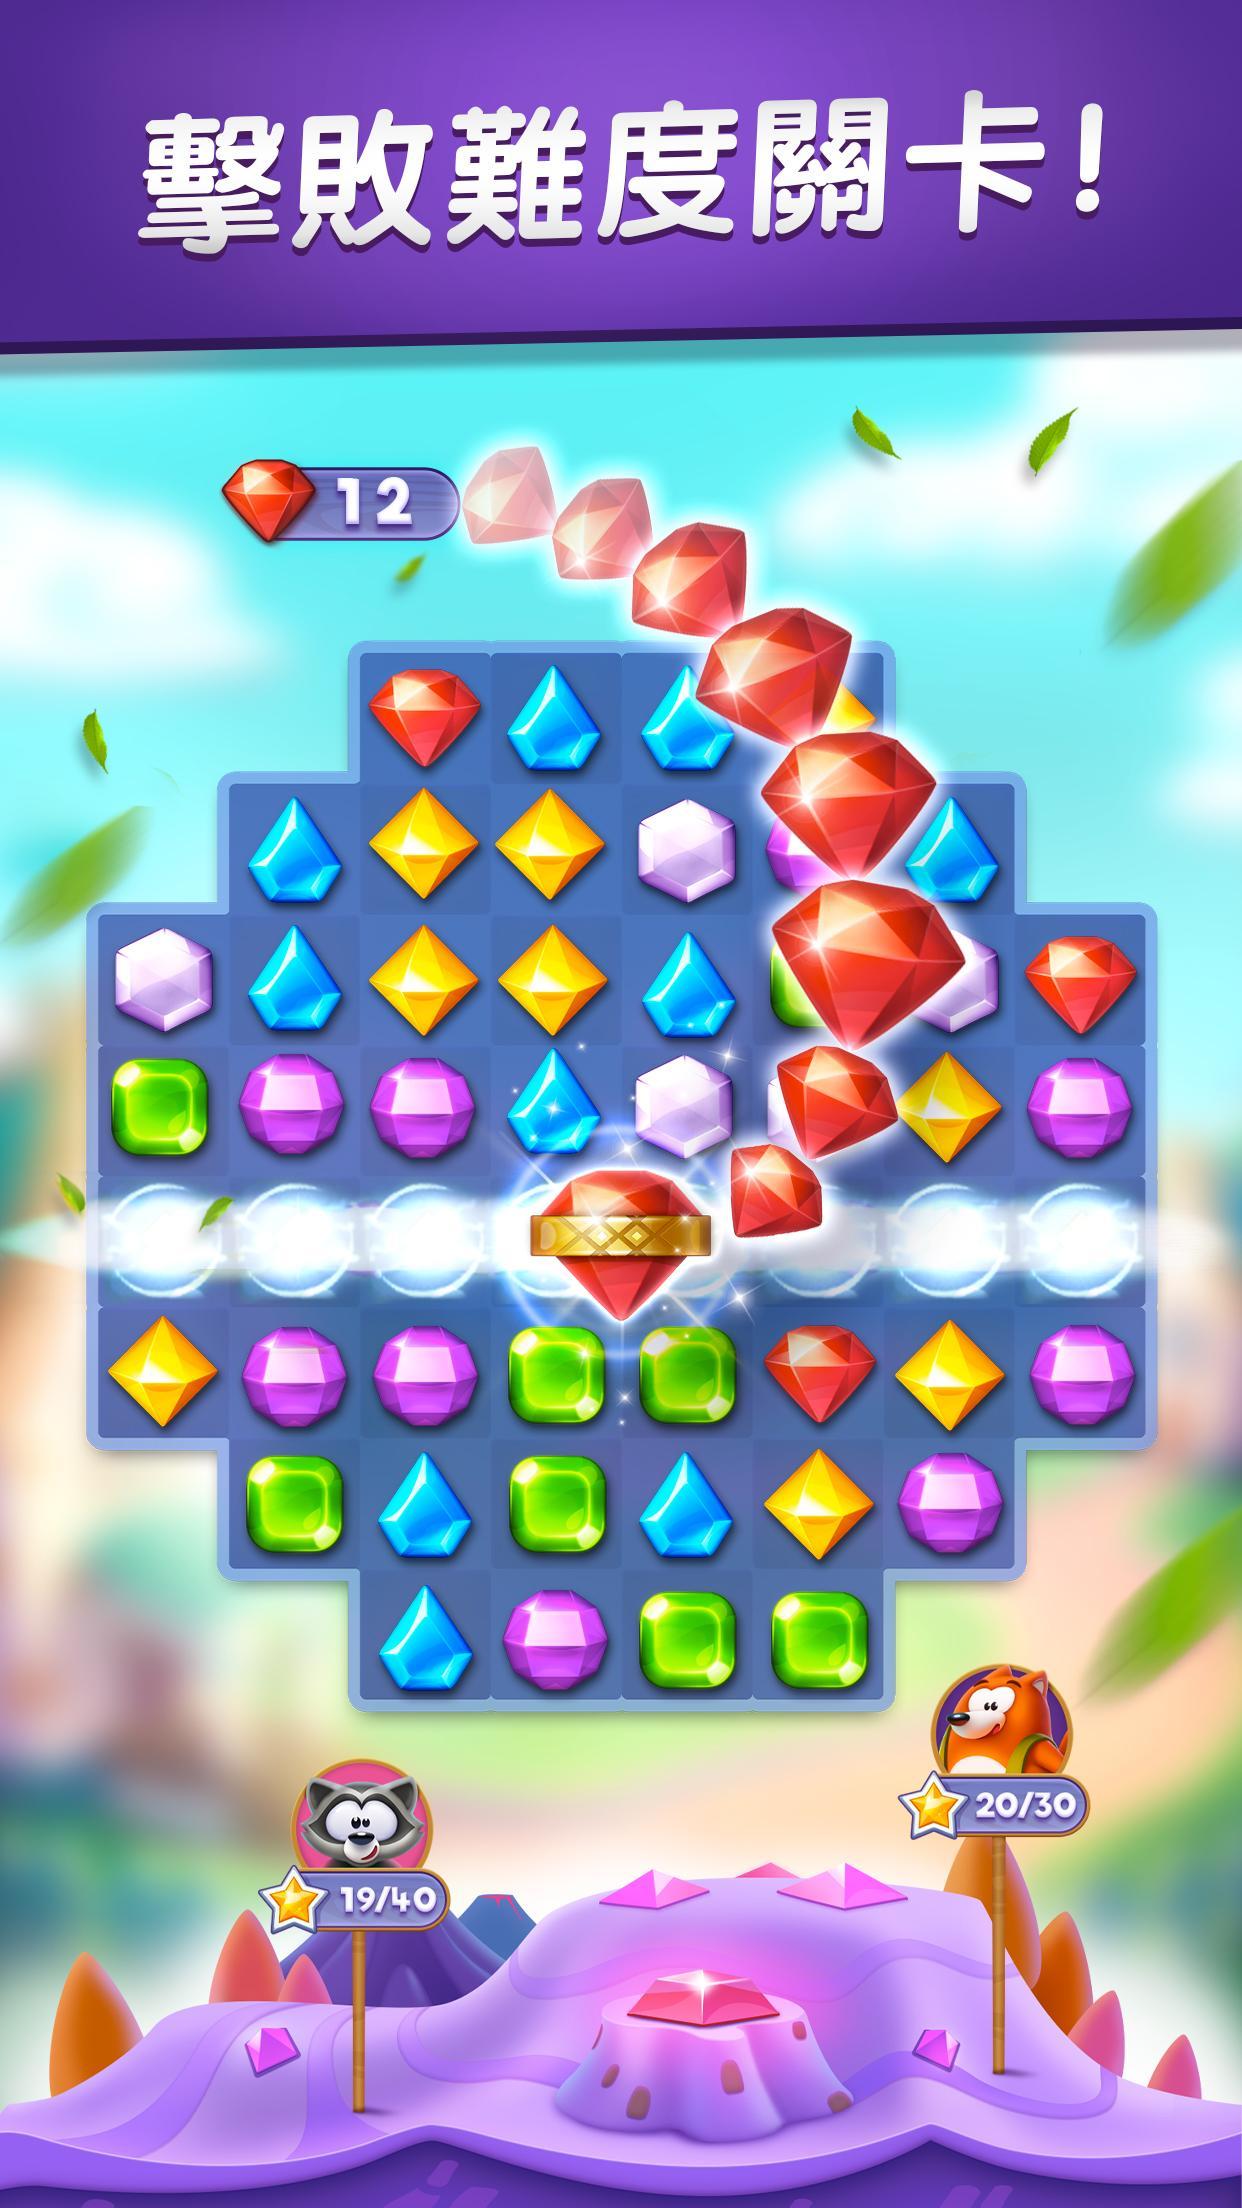 Screenshot 1 of Bling Crush - 最有趣的寶石消除益智遊戲！ 3.0.0